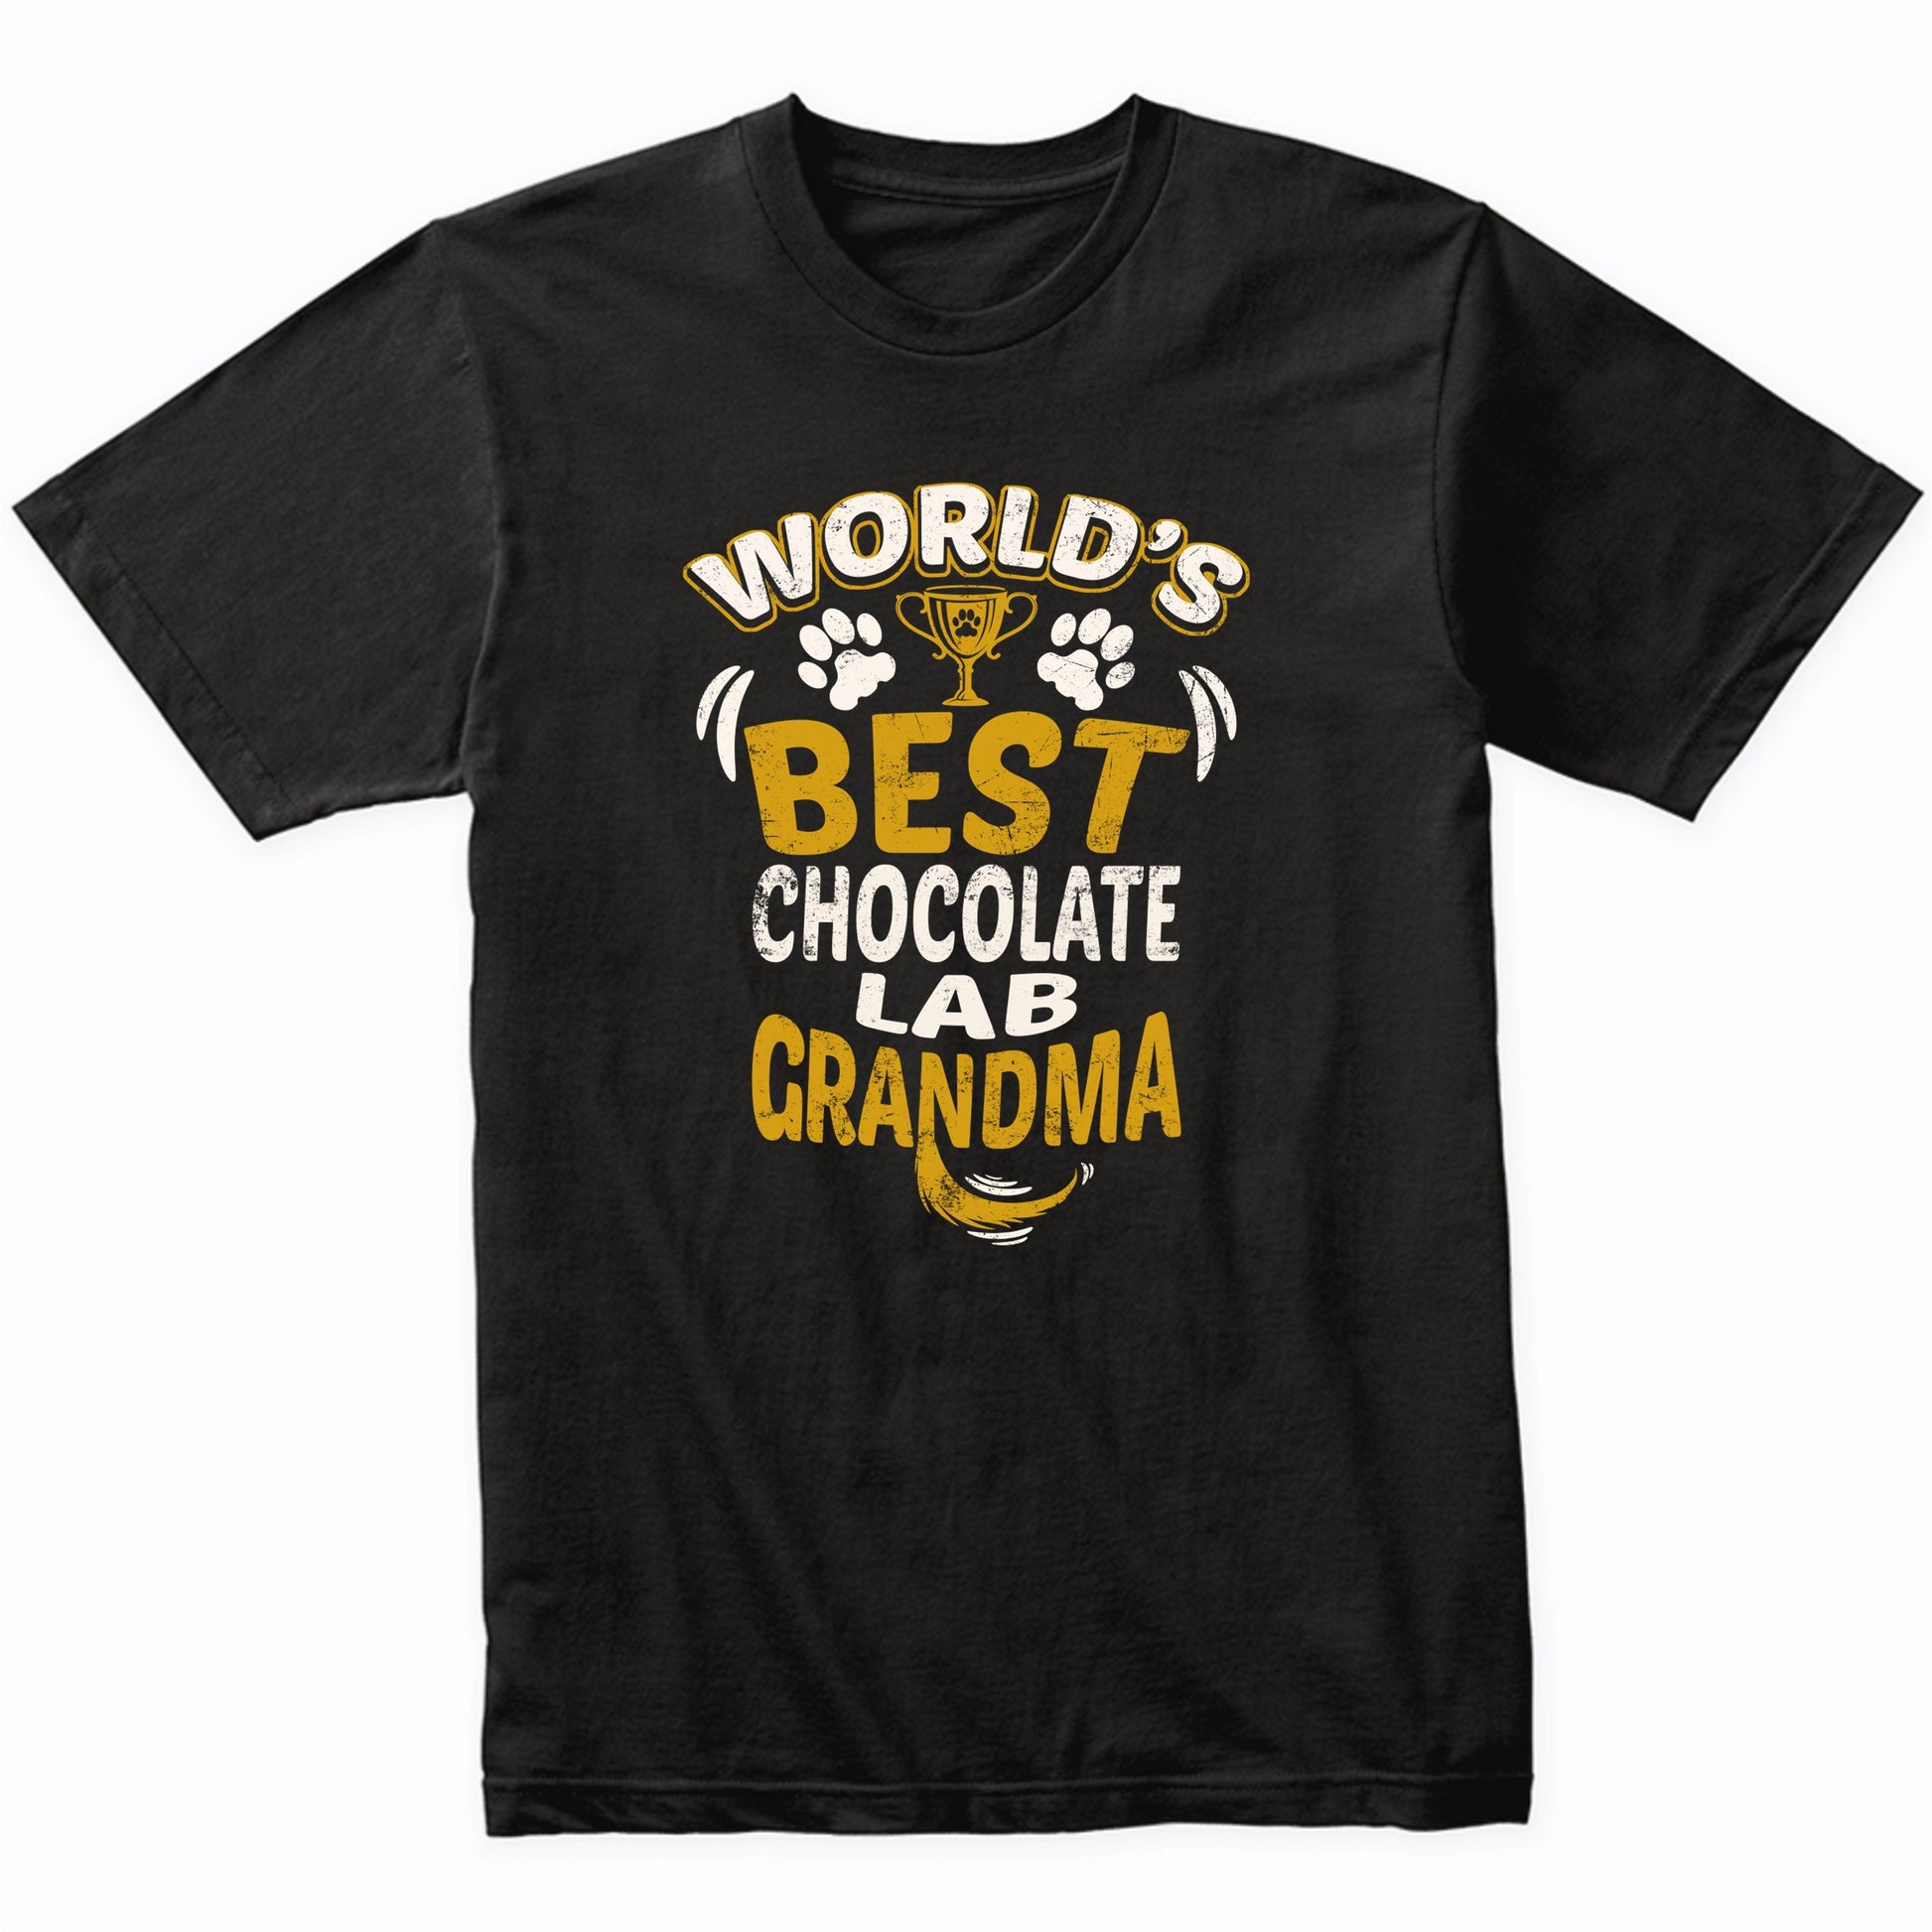 World's Best Chocolate Lab Grandma Graphic T-Shirt